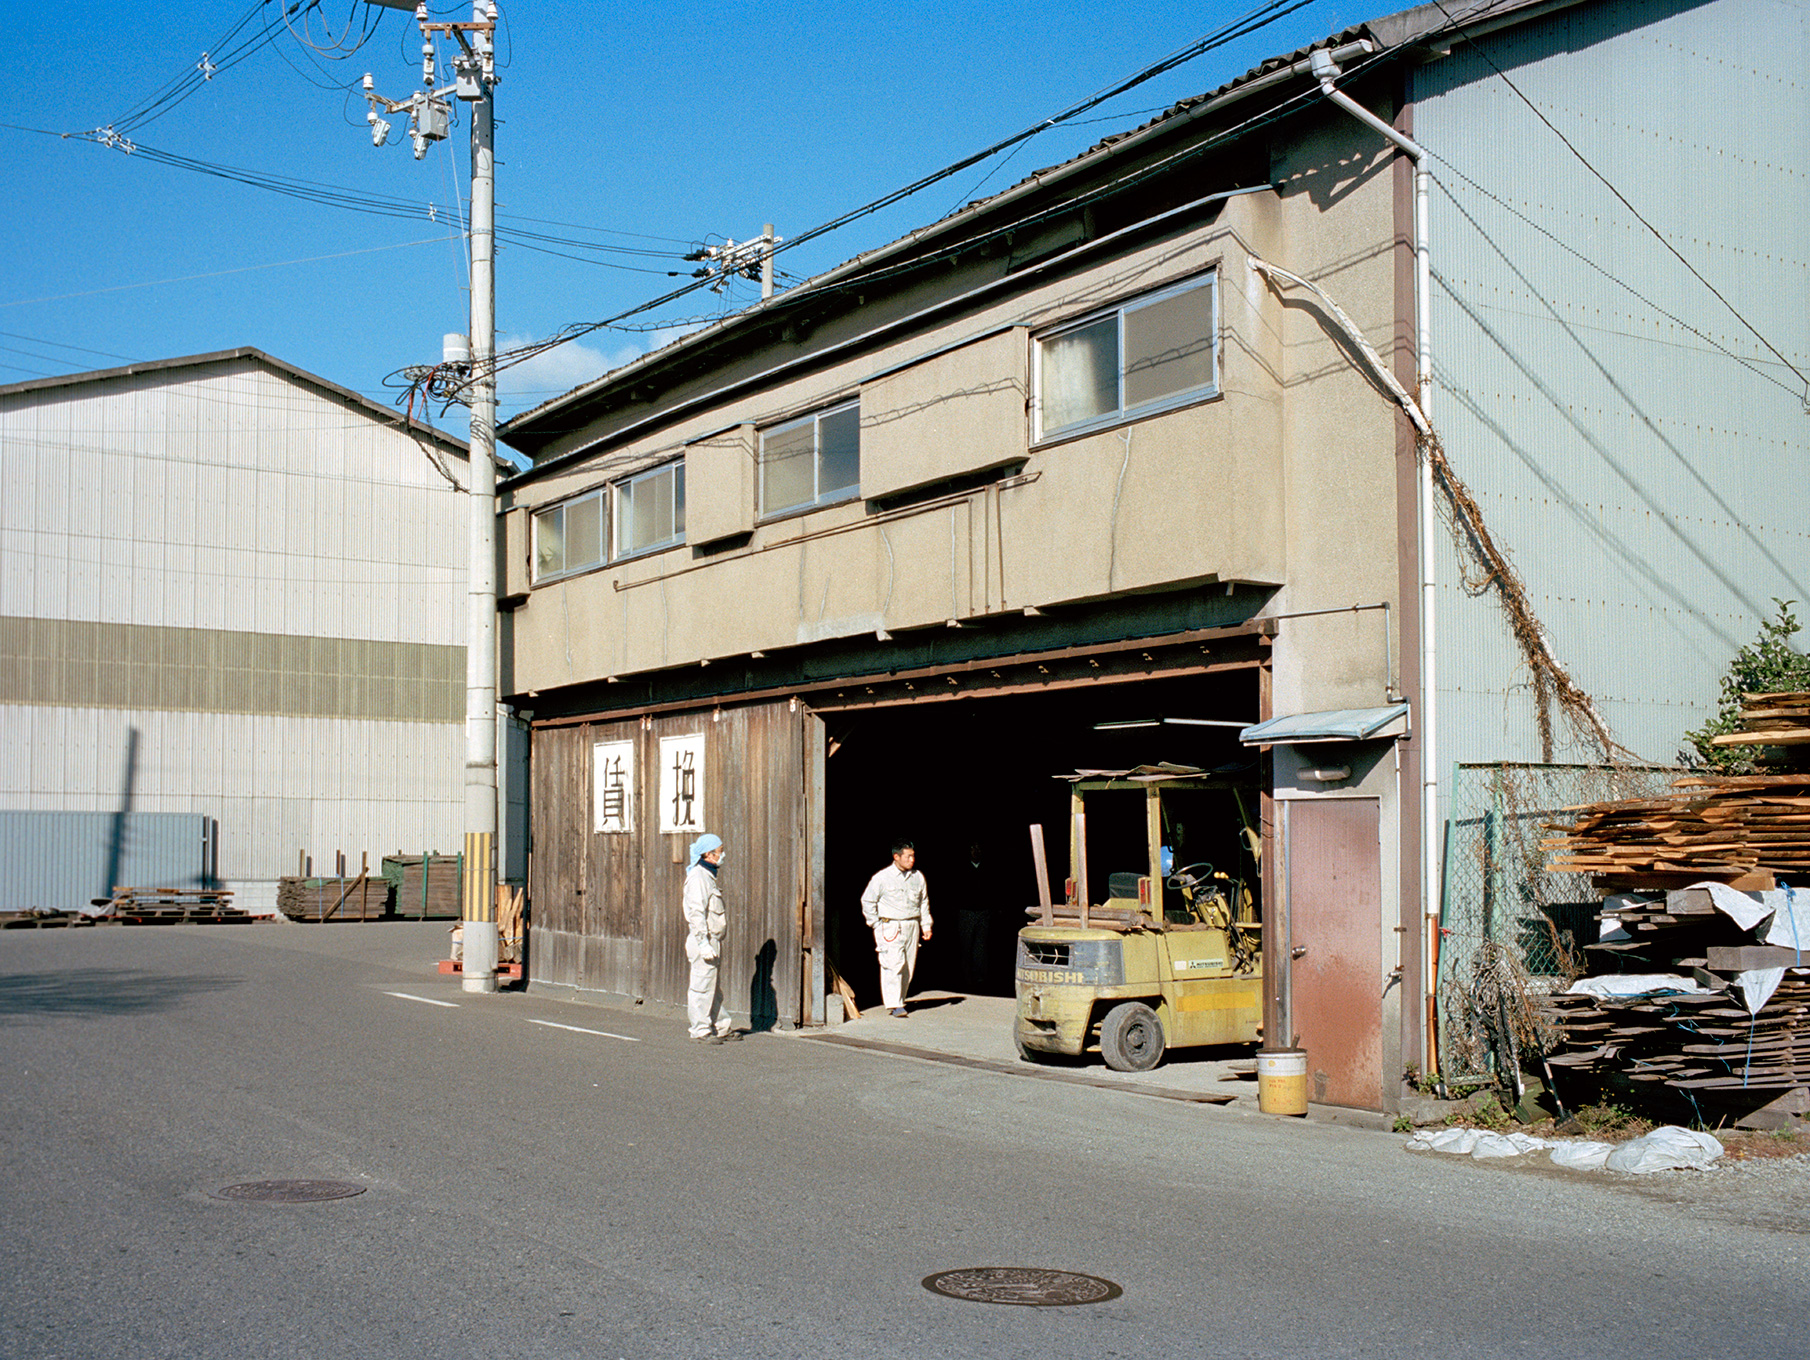   Workshop,  Kishiwada, 2010  